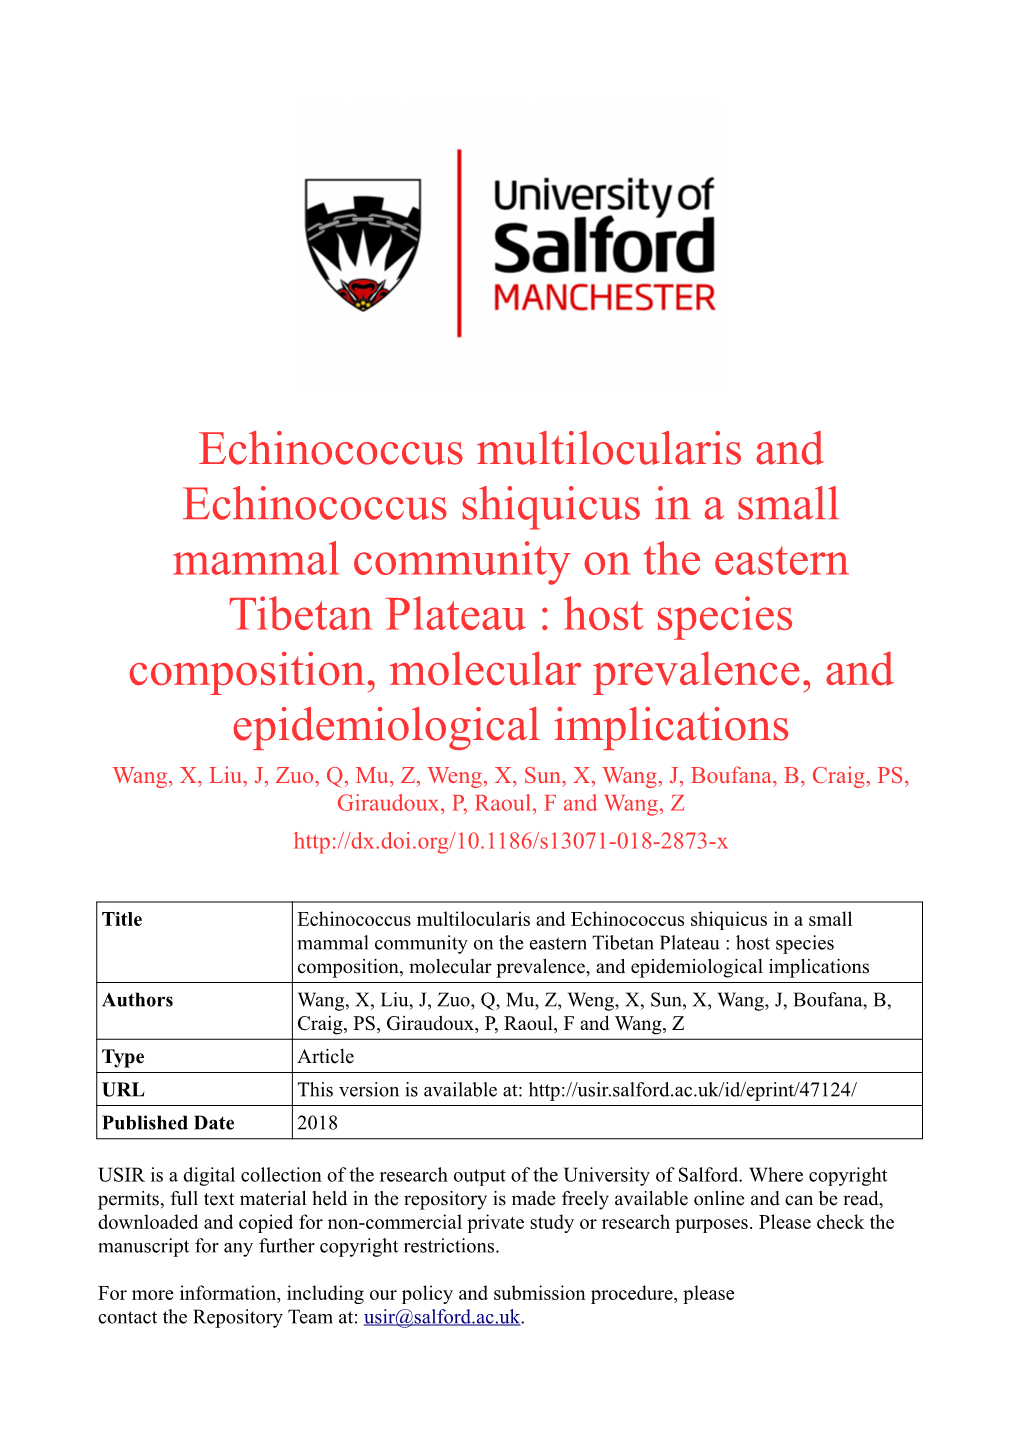 Echinococcus Multilocularis and Echinococcus Shiquicus in a Small